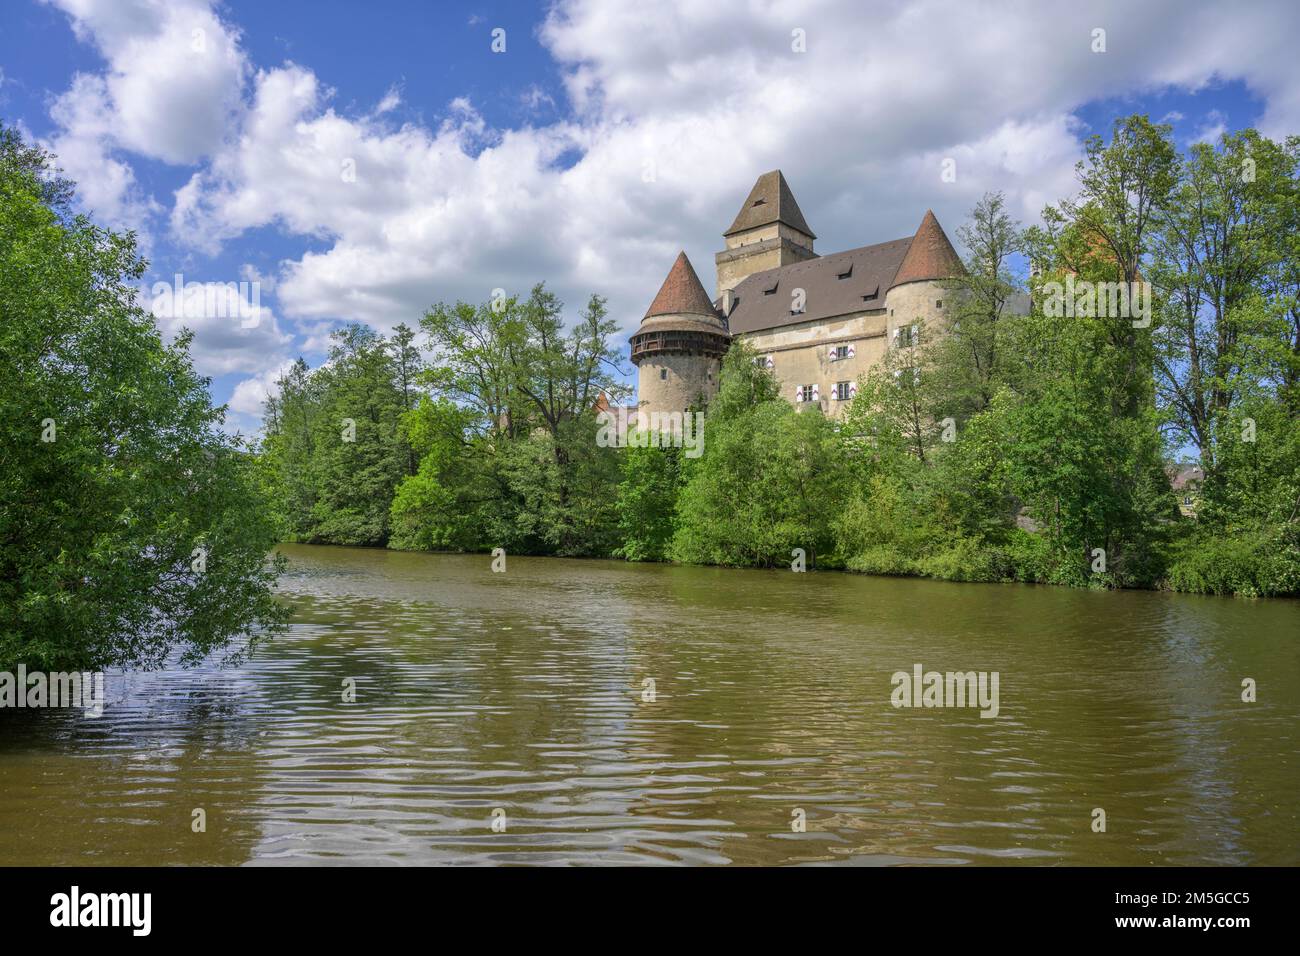 Castle with water-filled moat, Heidenreichstein, Lower Austria, Austria Stock Photo